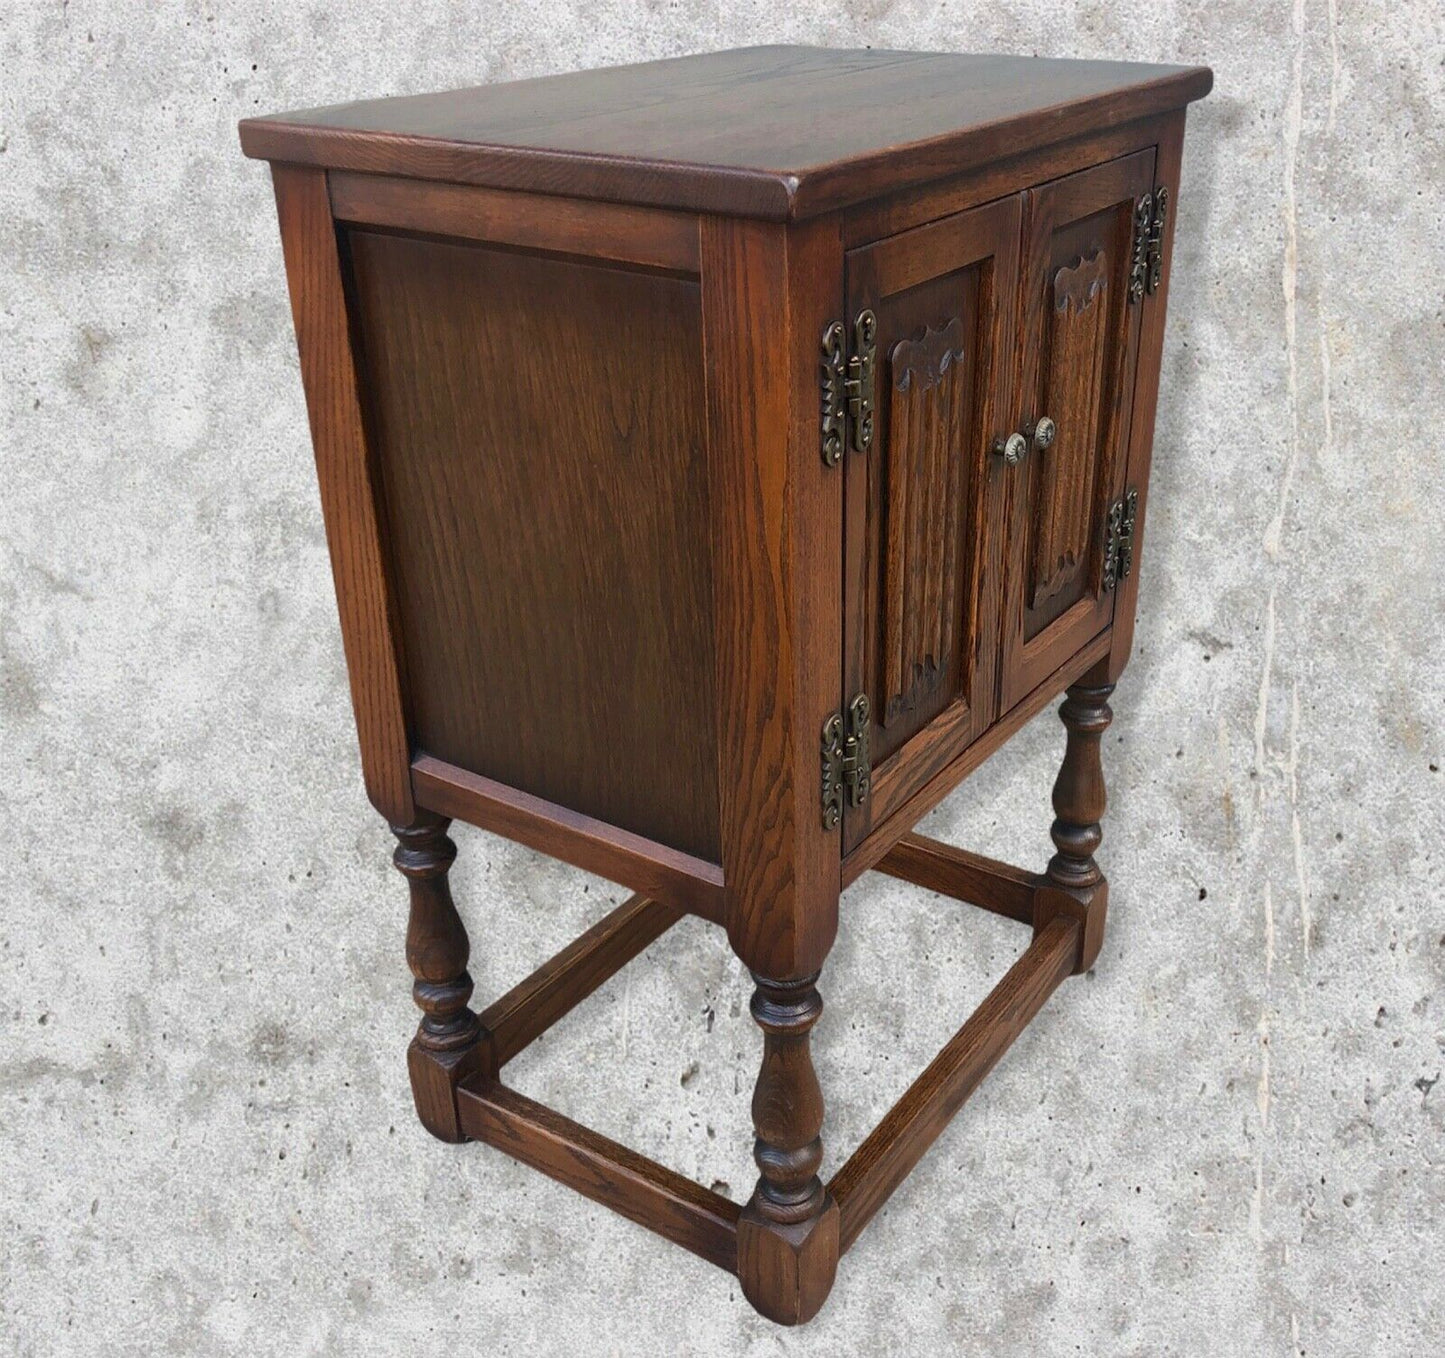 Old Charm Bedside Cabinet / Vintage Bedside Table ( SOLD )